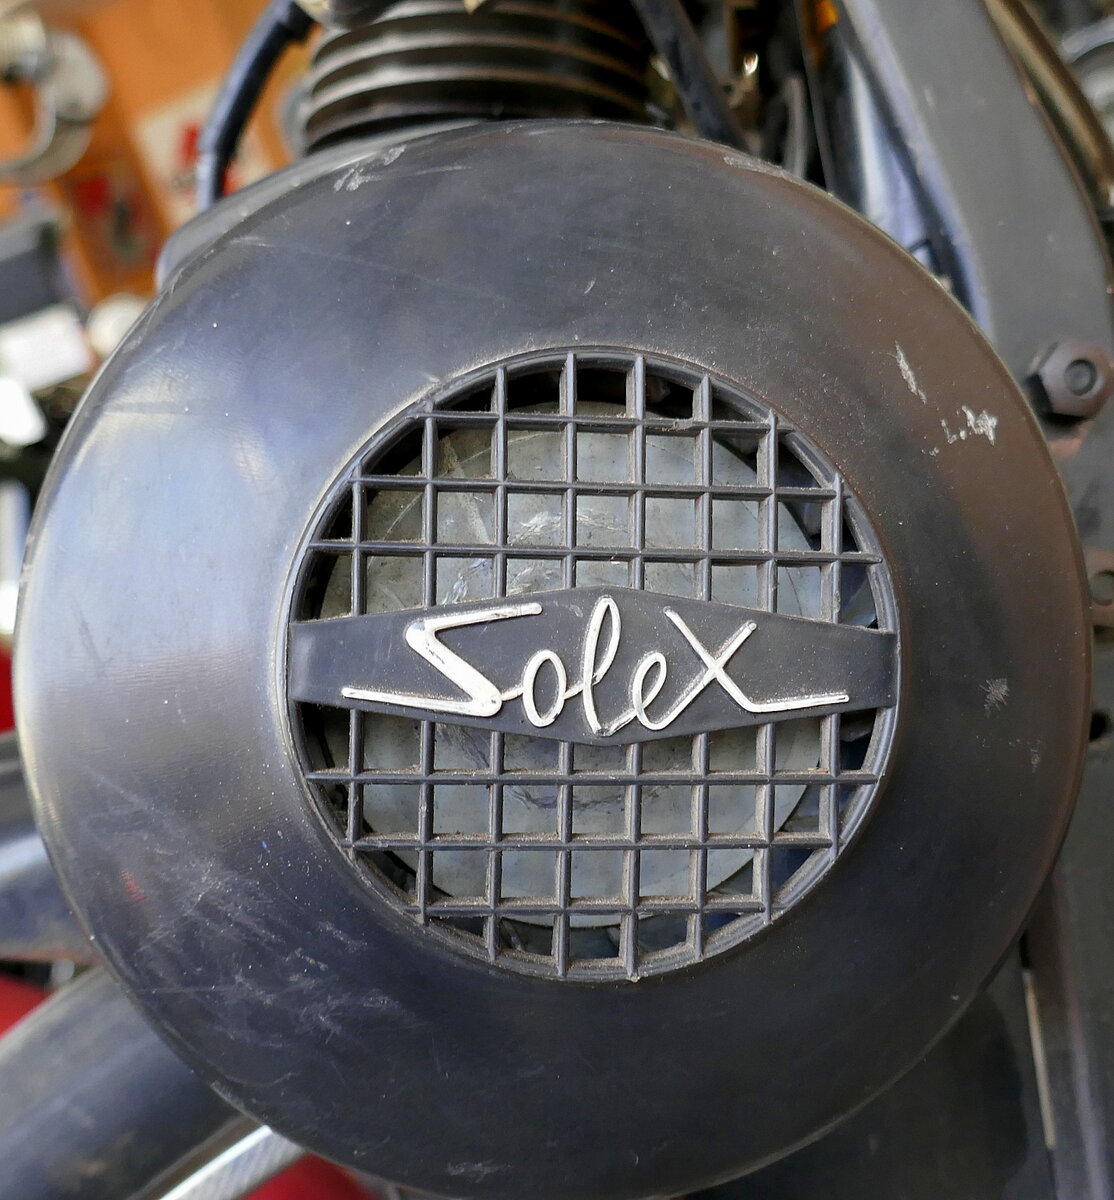 SOLEX, Schriftzug am Mofa Sinfac 3000 von 1972, die französische Firma bestand von 1905-1988 und baute Mofas in großen Stückzahlen, Breig's Motorrad-und Spielzeugmuseum in Zell a.H., Sept.2021